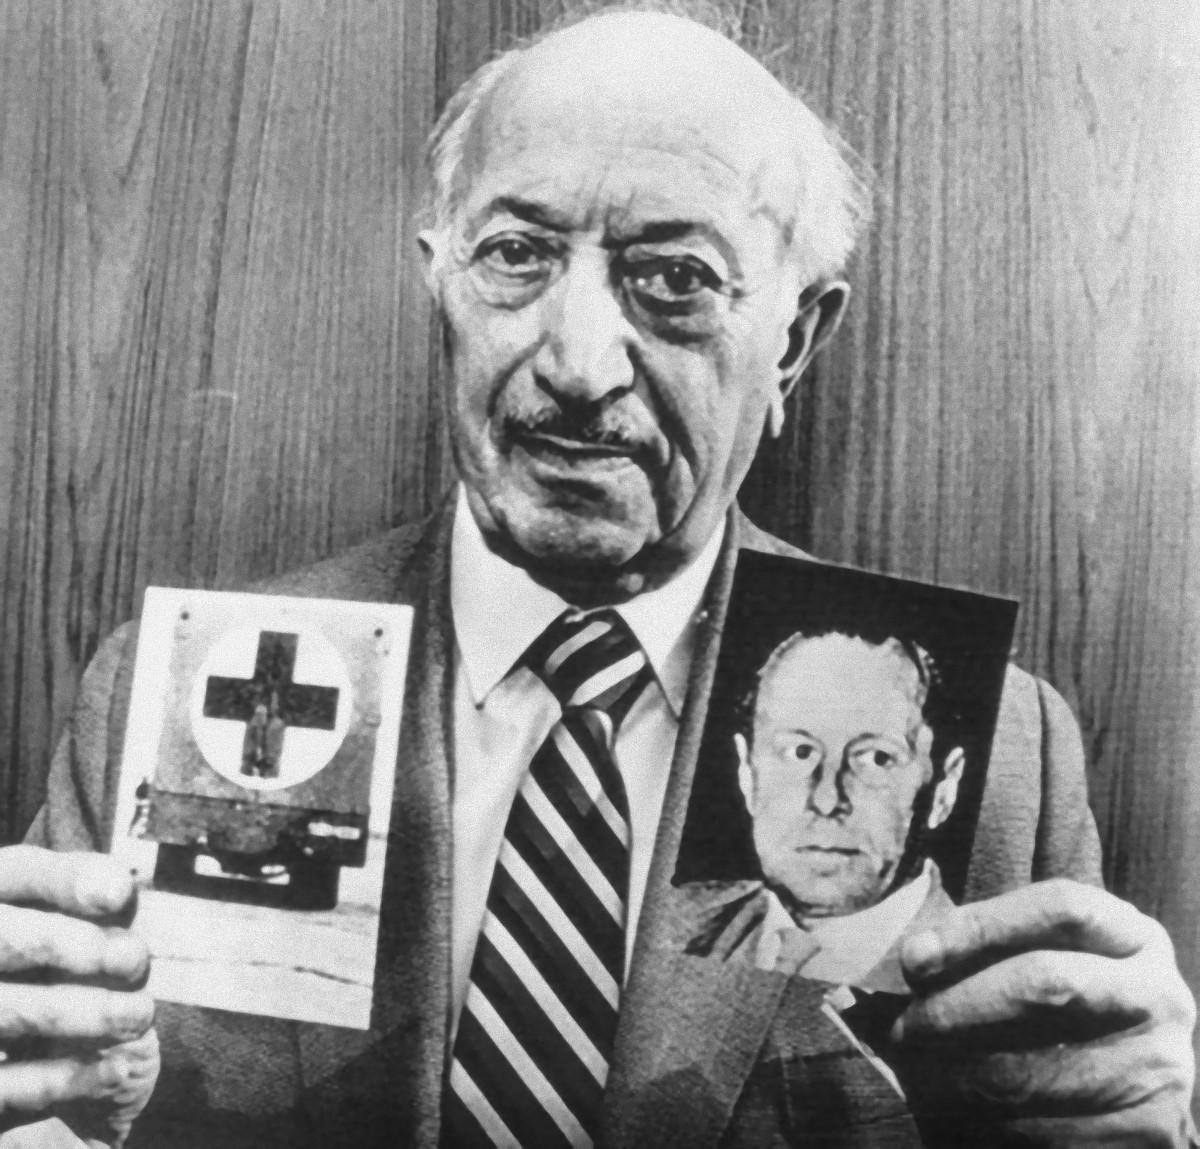 Unknown Portrait Photograph - Portrait of Simon Wiesenthal - Vintage b/w Photograph - 1983